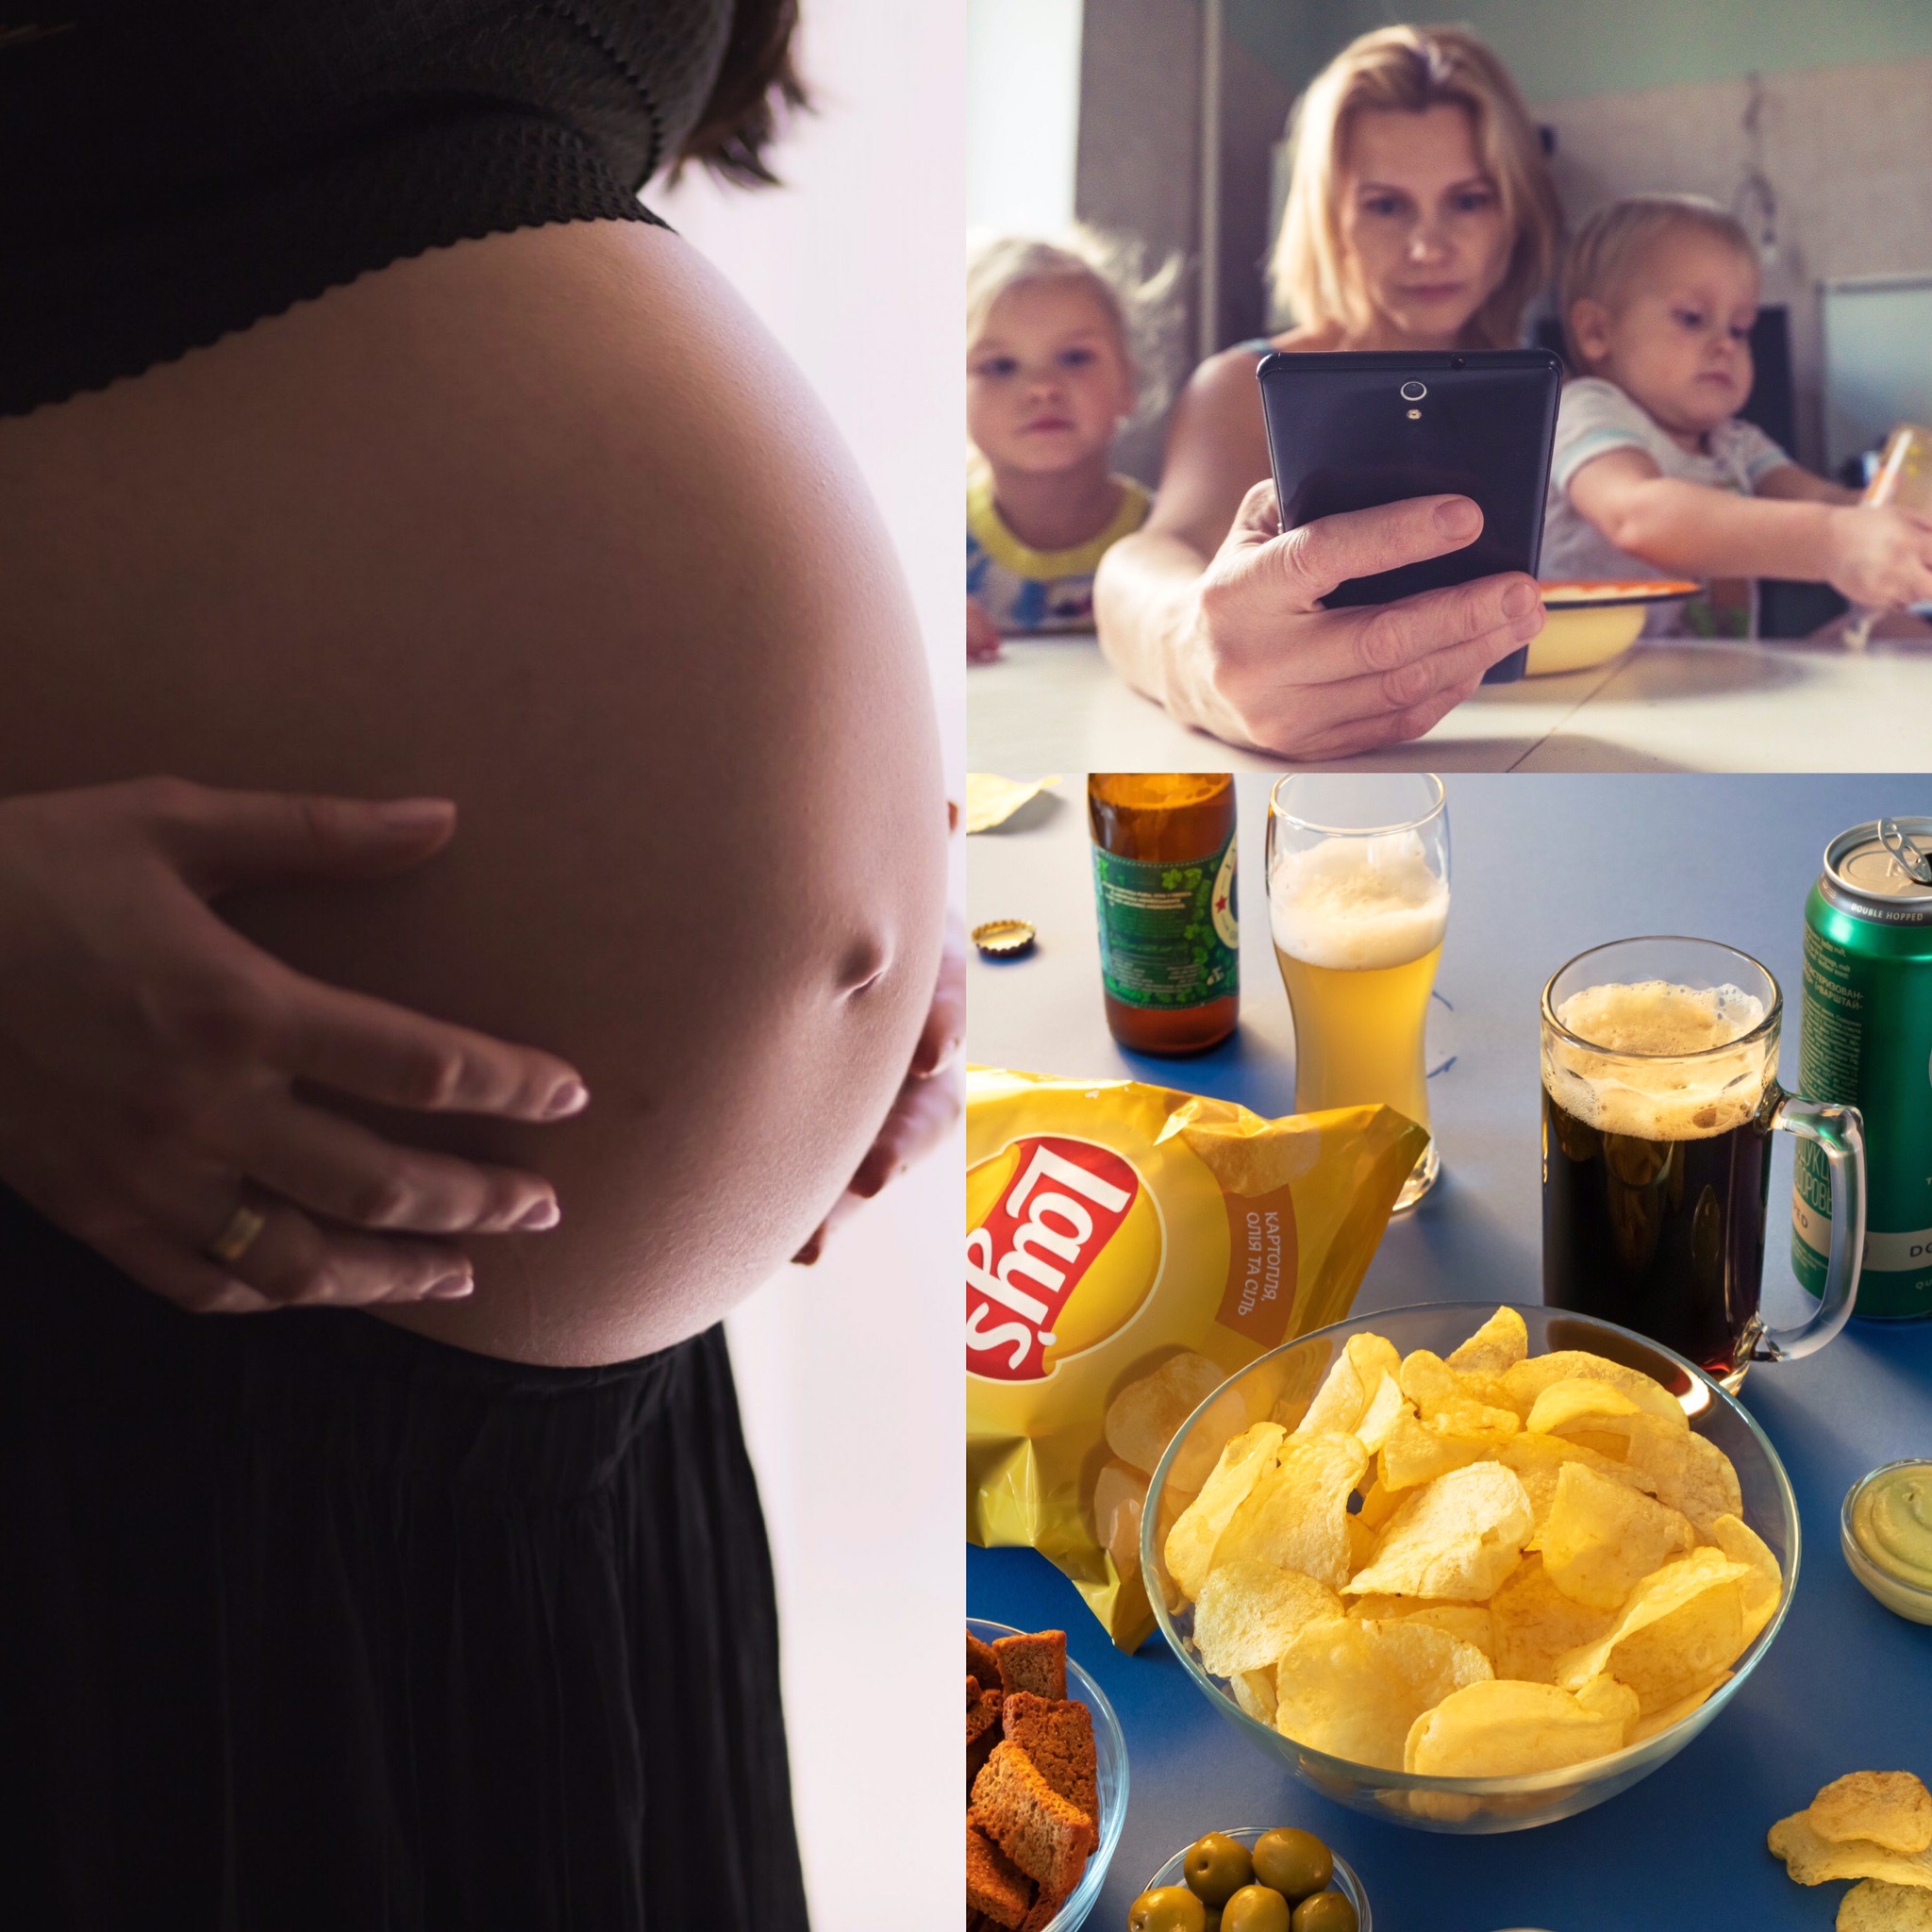 產後因為育兒的壓力總是靠著吃高熱量的食物及喝含糖飲料紓壓。